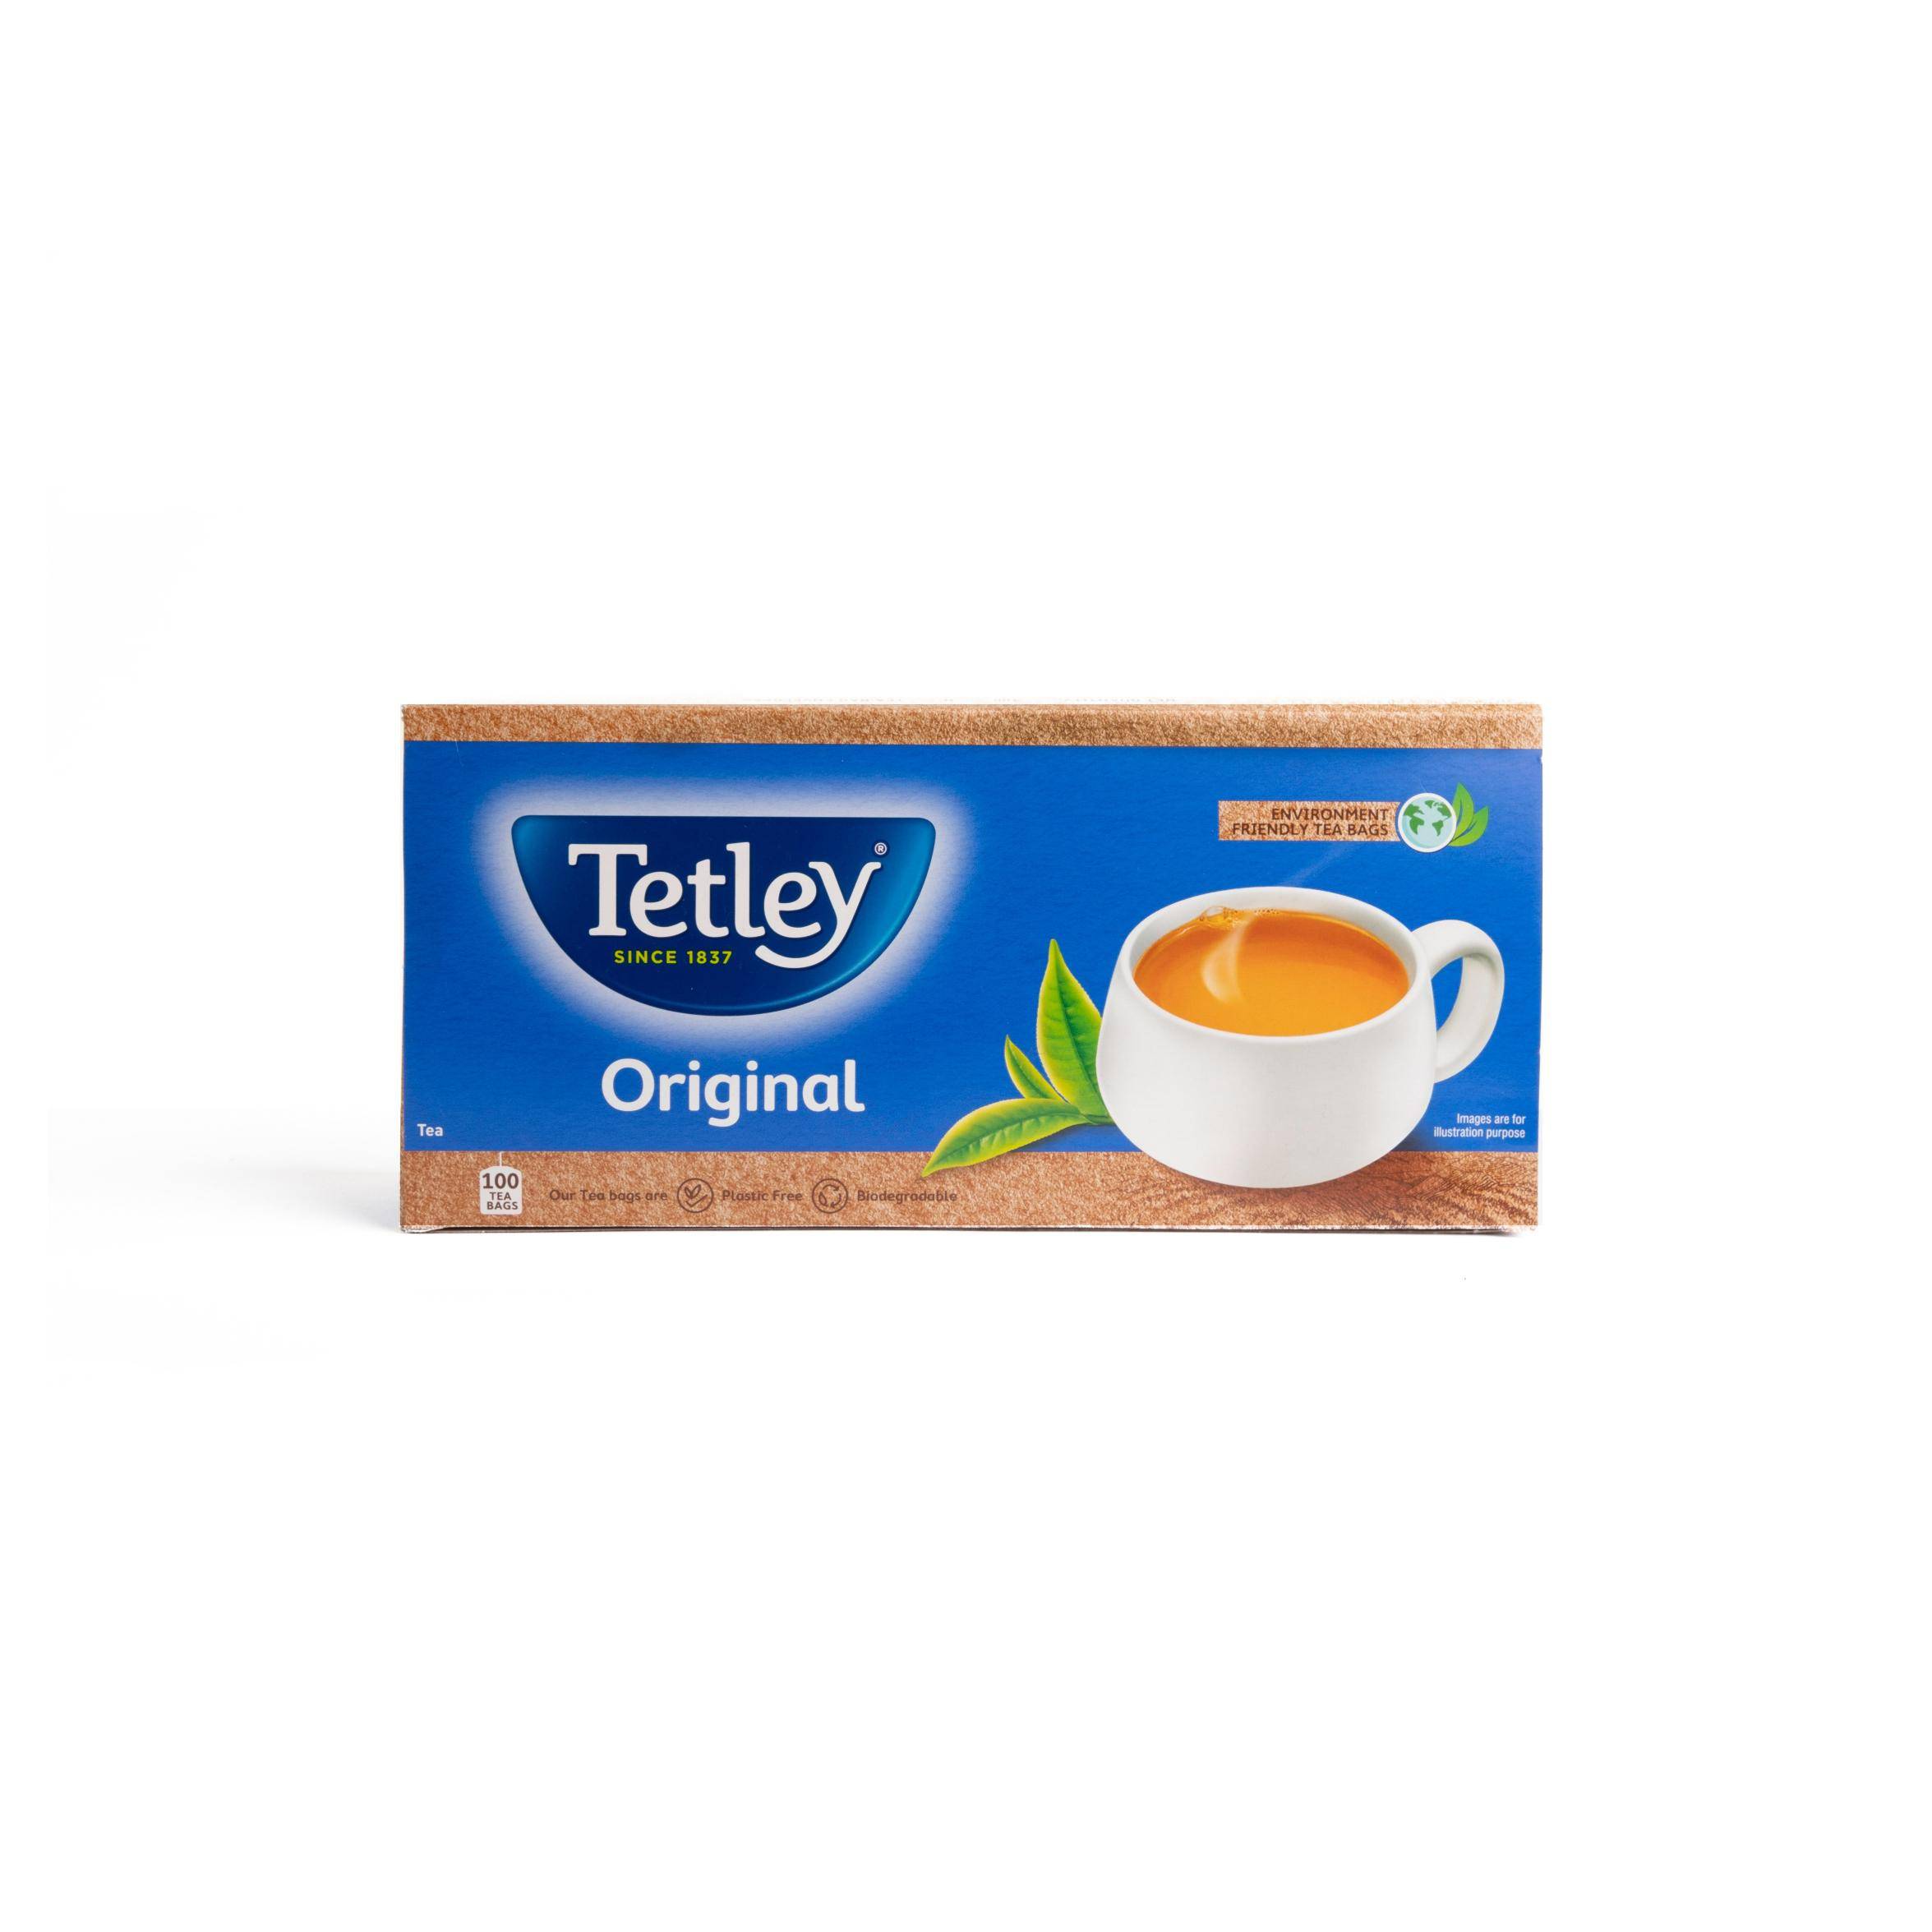 Tetley Regular Tea Original Envelope Tea Bags 100s - Image 2